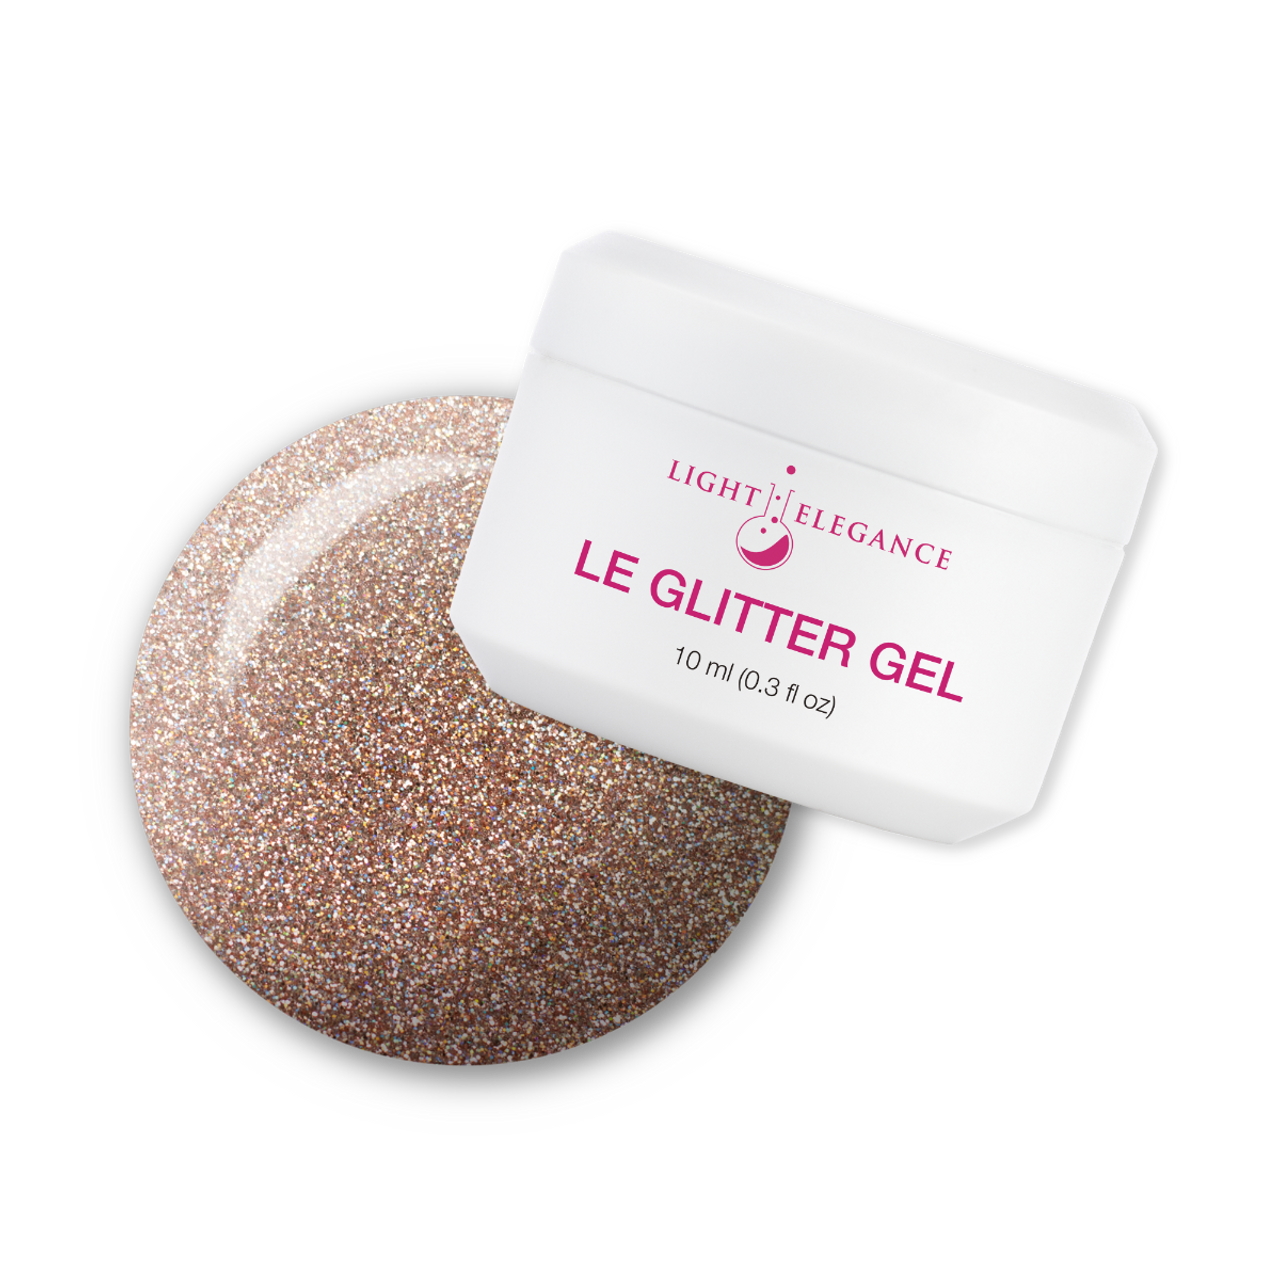 Light Elegance UV/LED Glitter Gel Mercury Meltdown - 10 ml